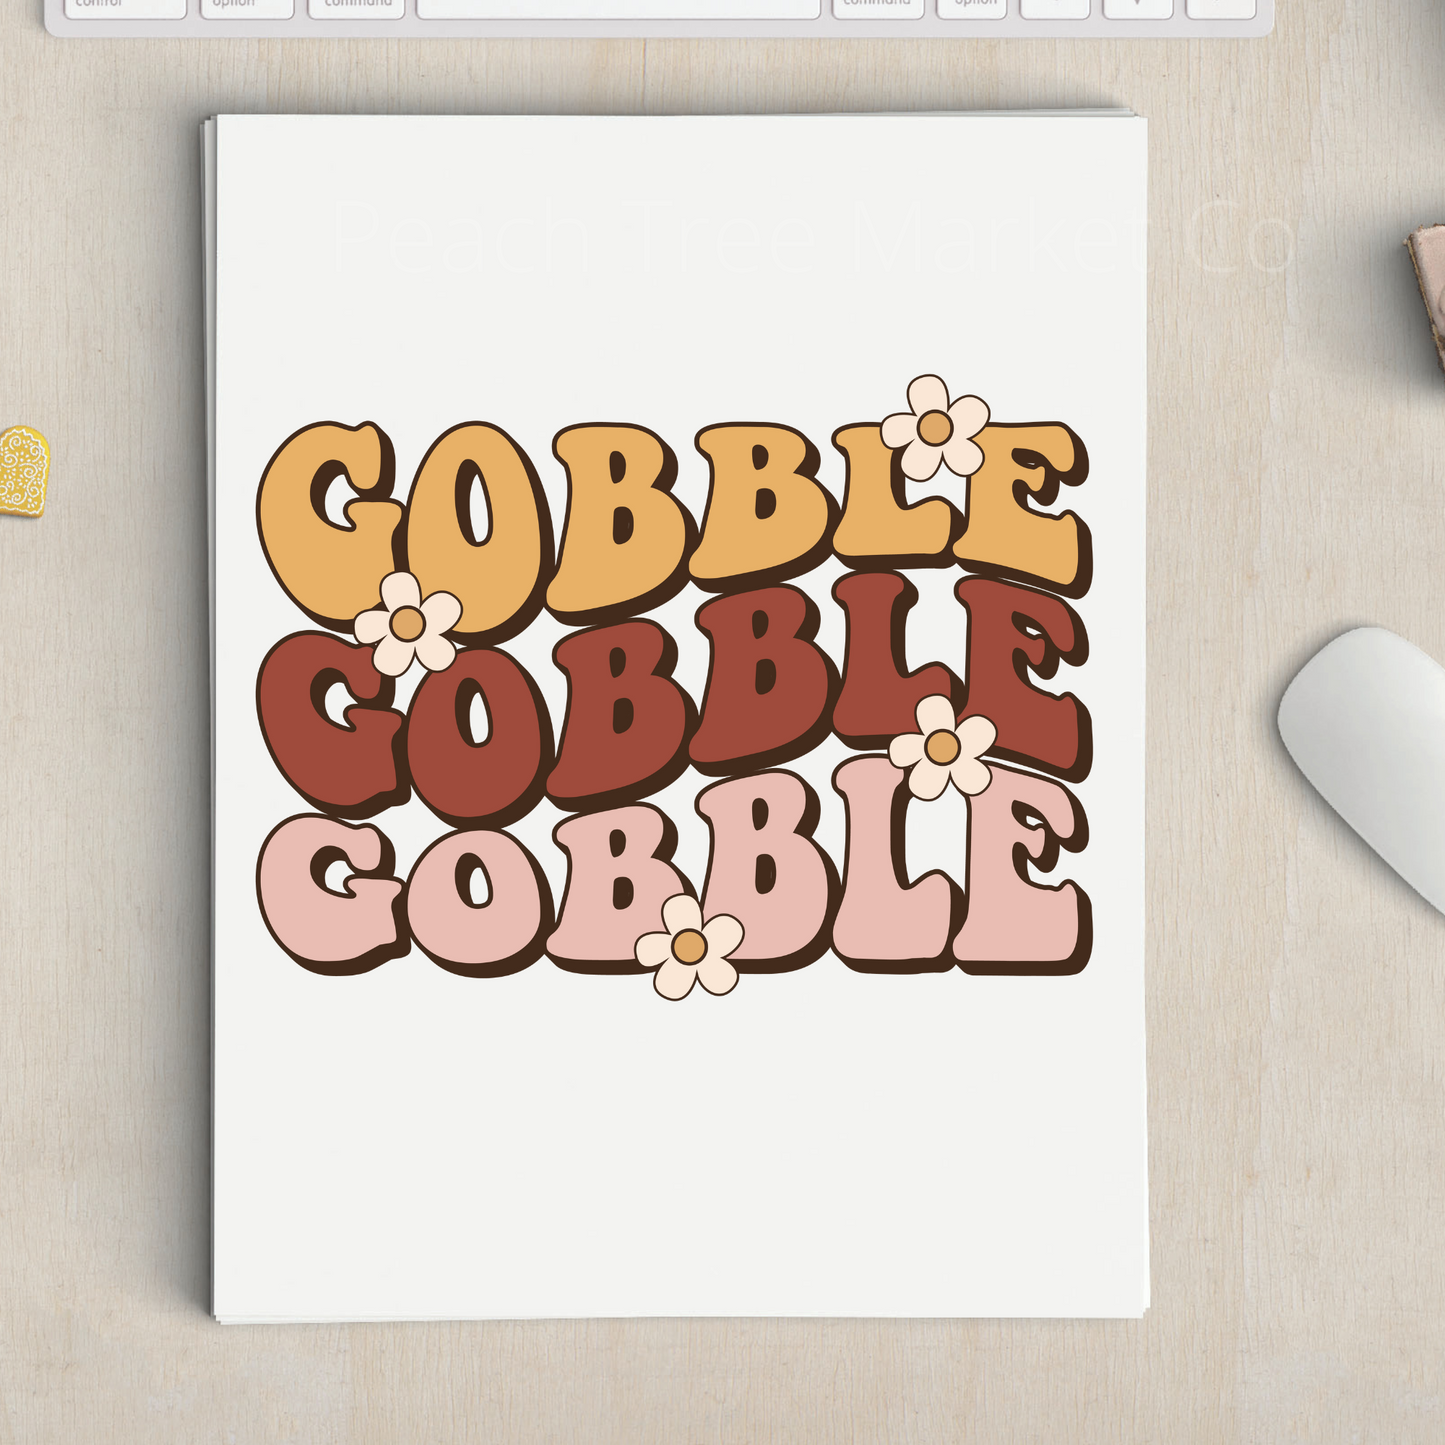 Gobble Gobble Gobble Sublimation Transfer